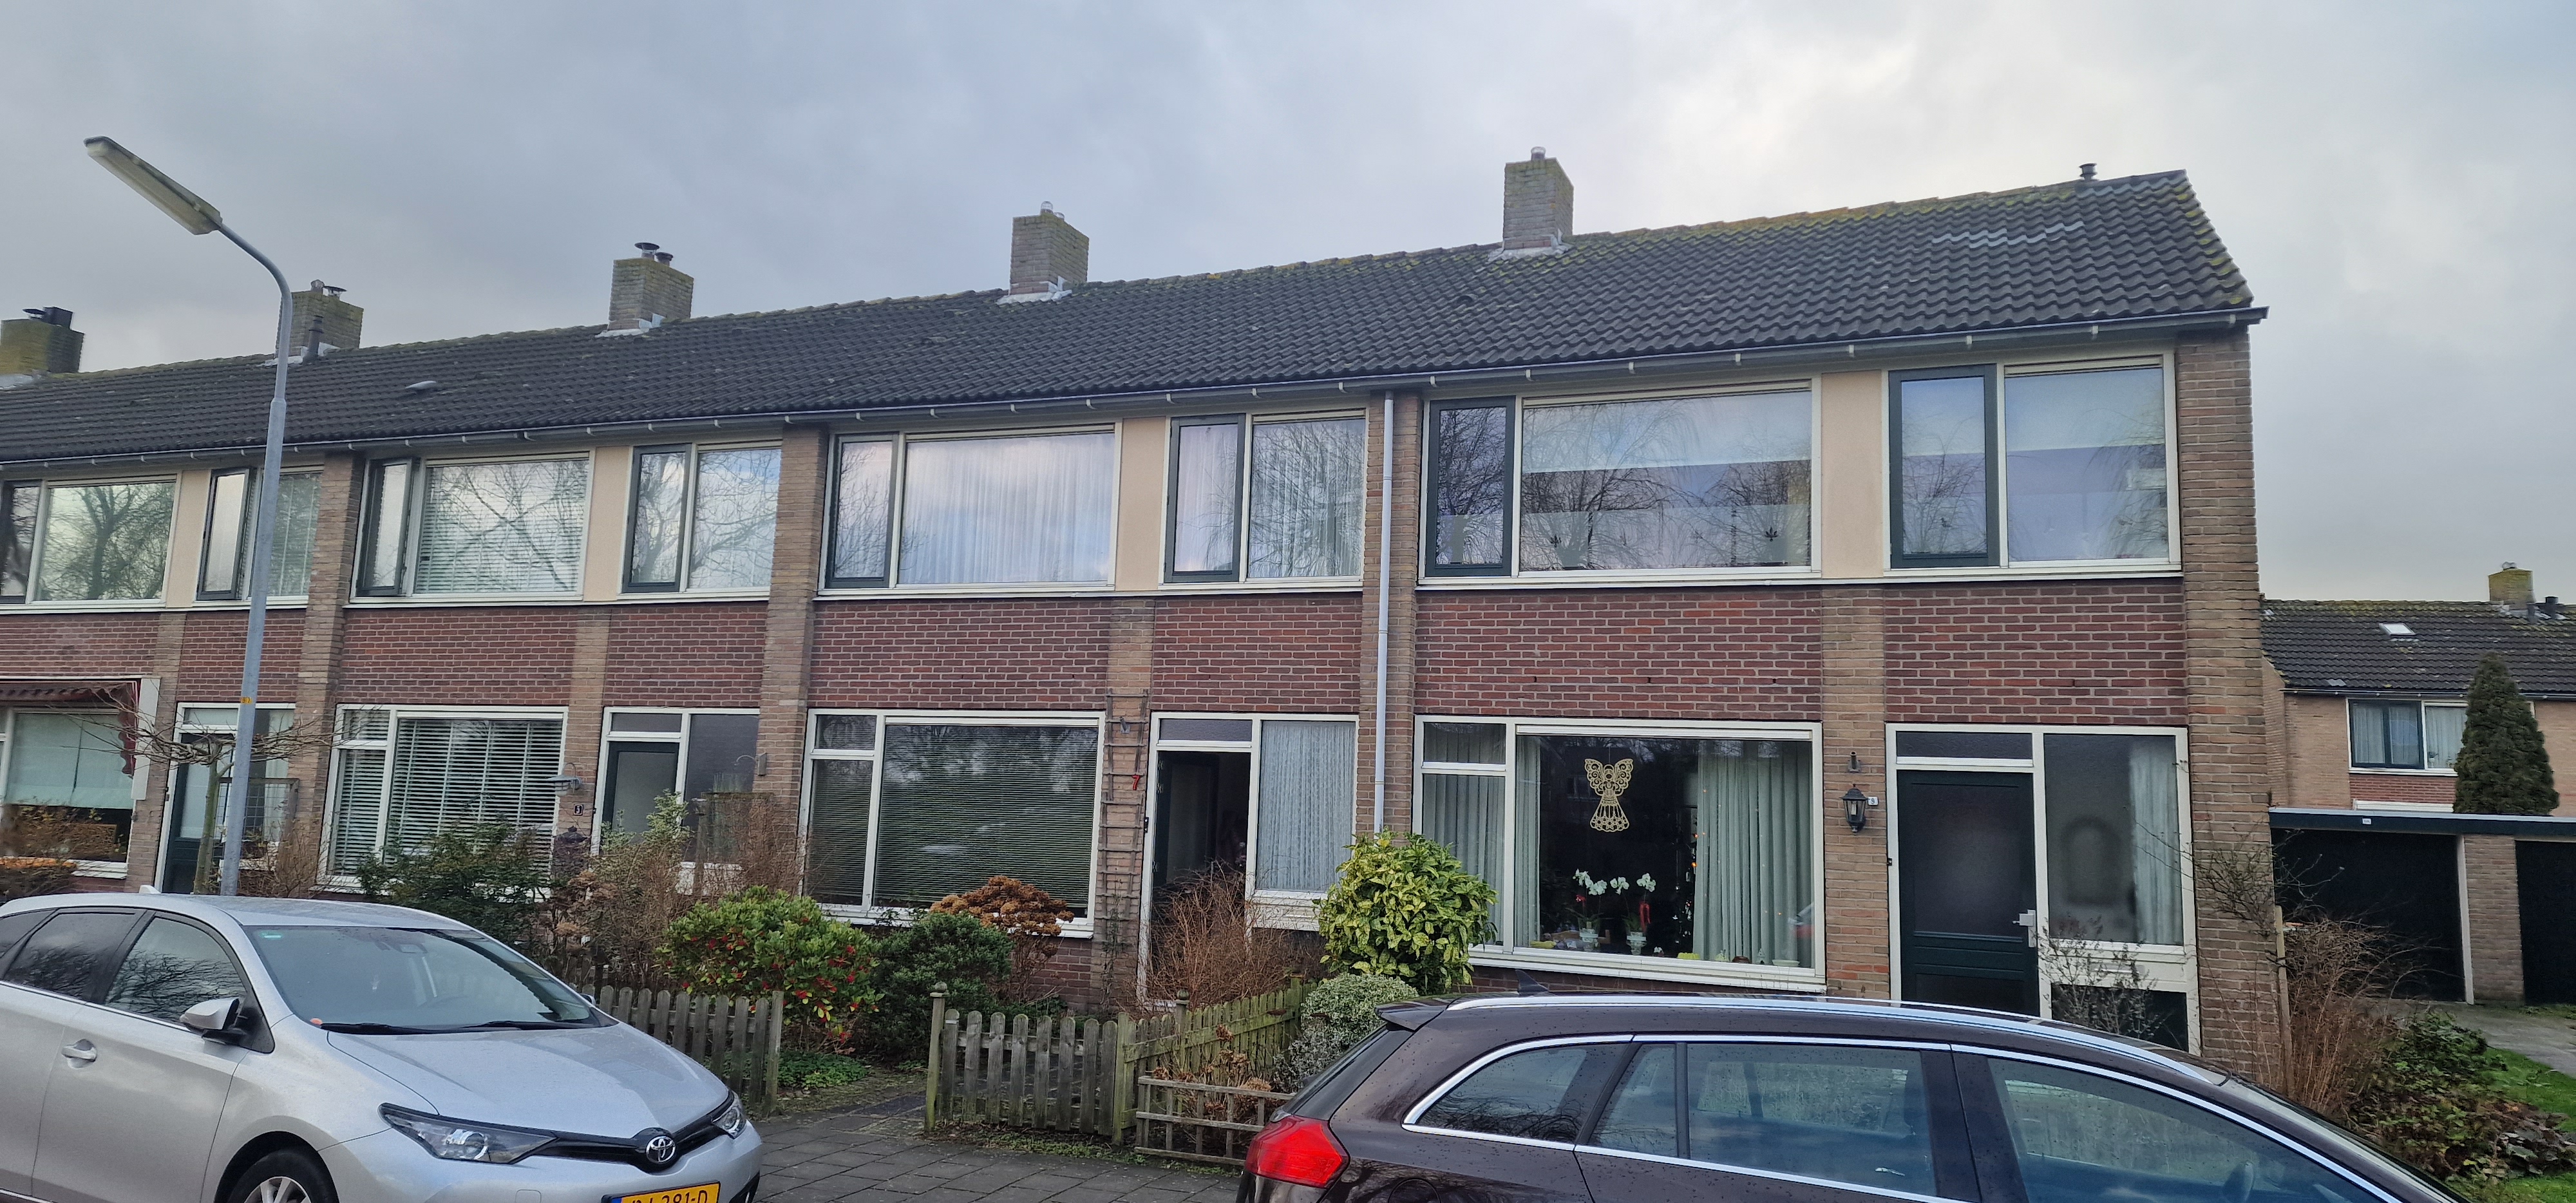 Seringenstraat 7, 1723 WR Noord-Scharwoude, Nederland